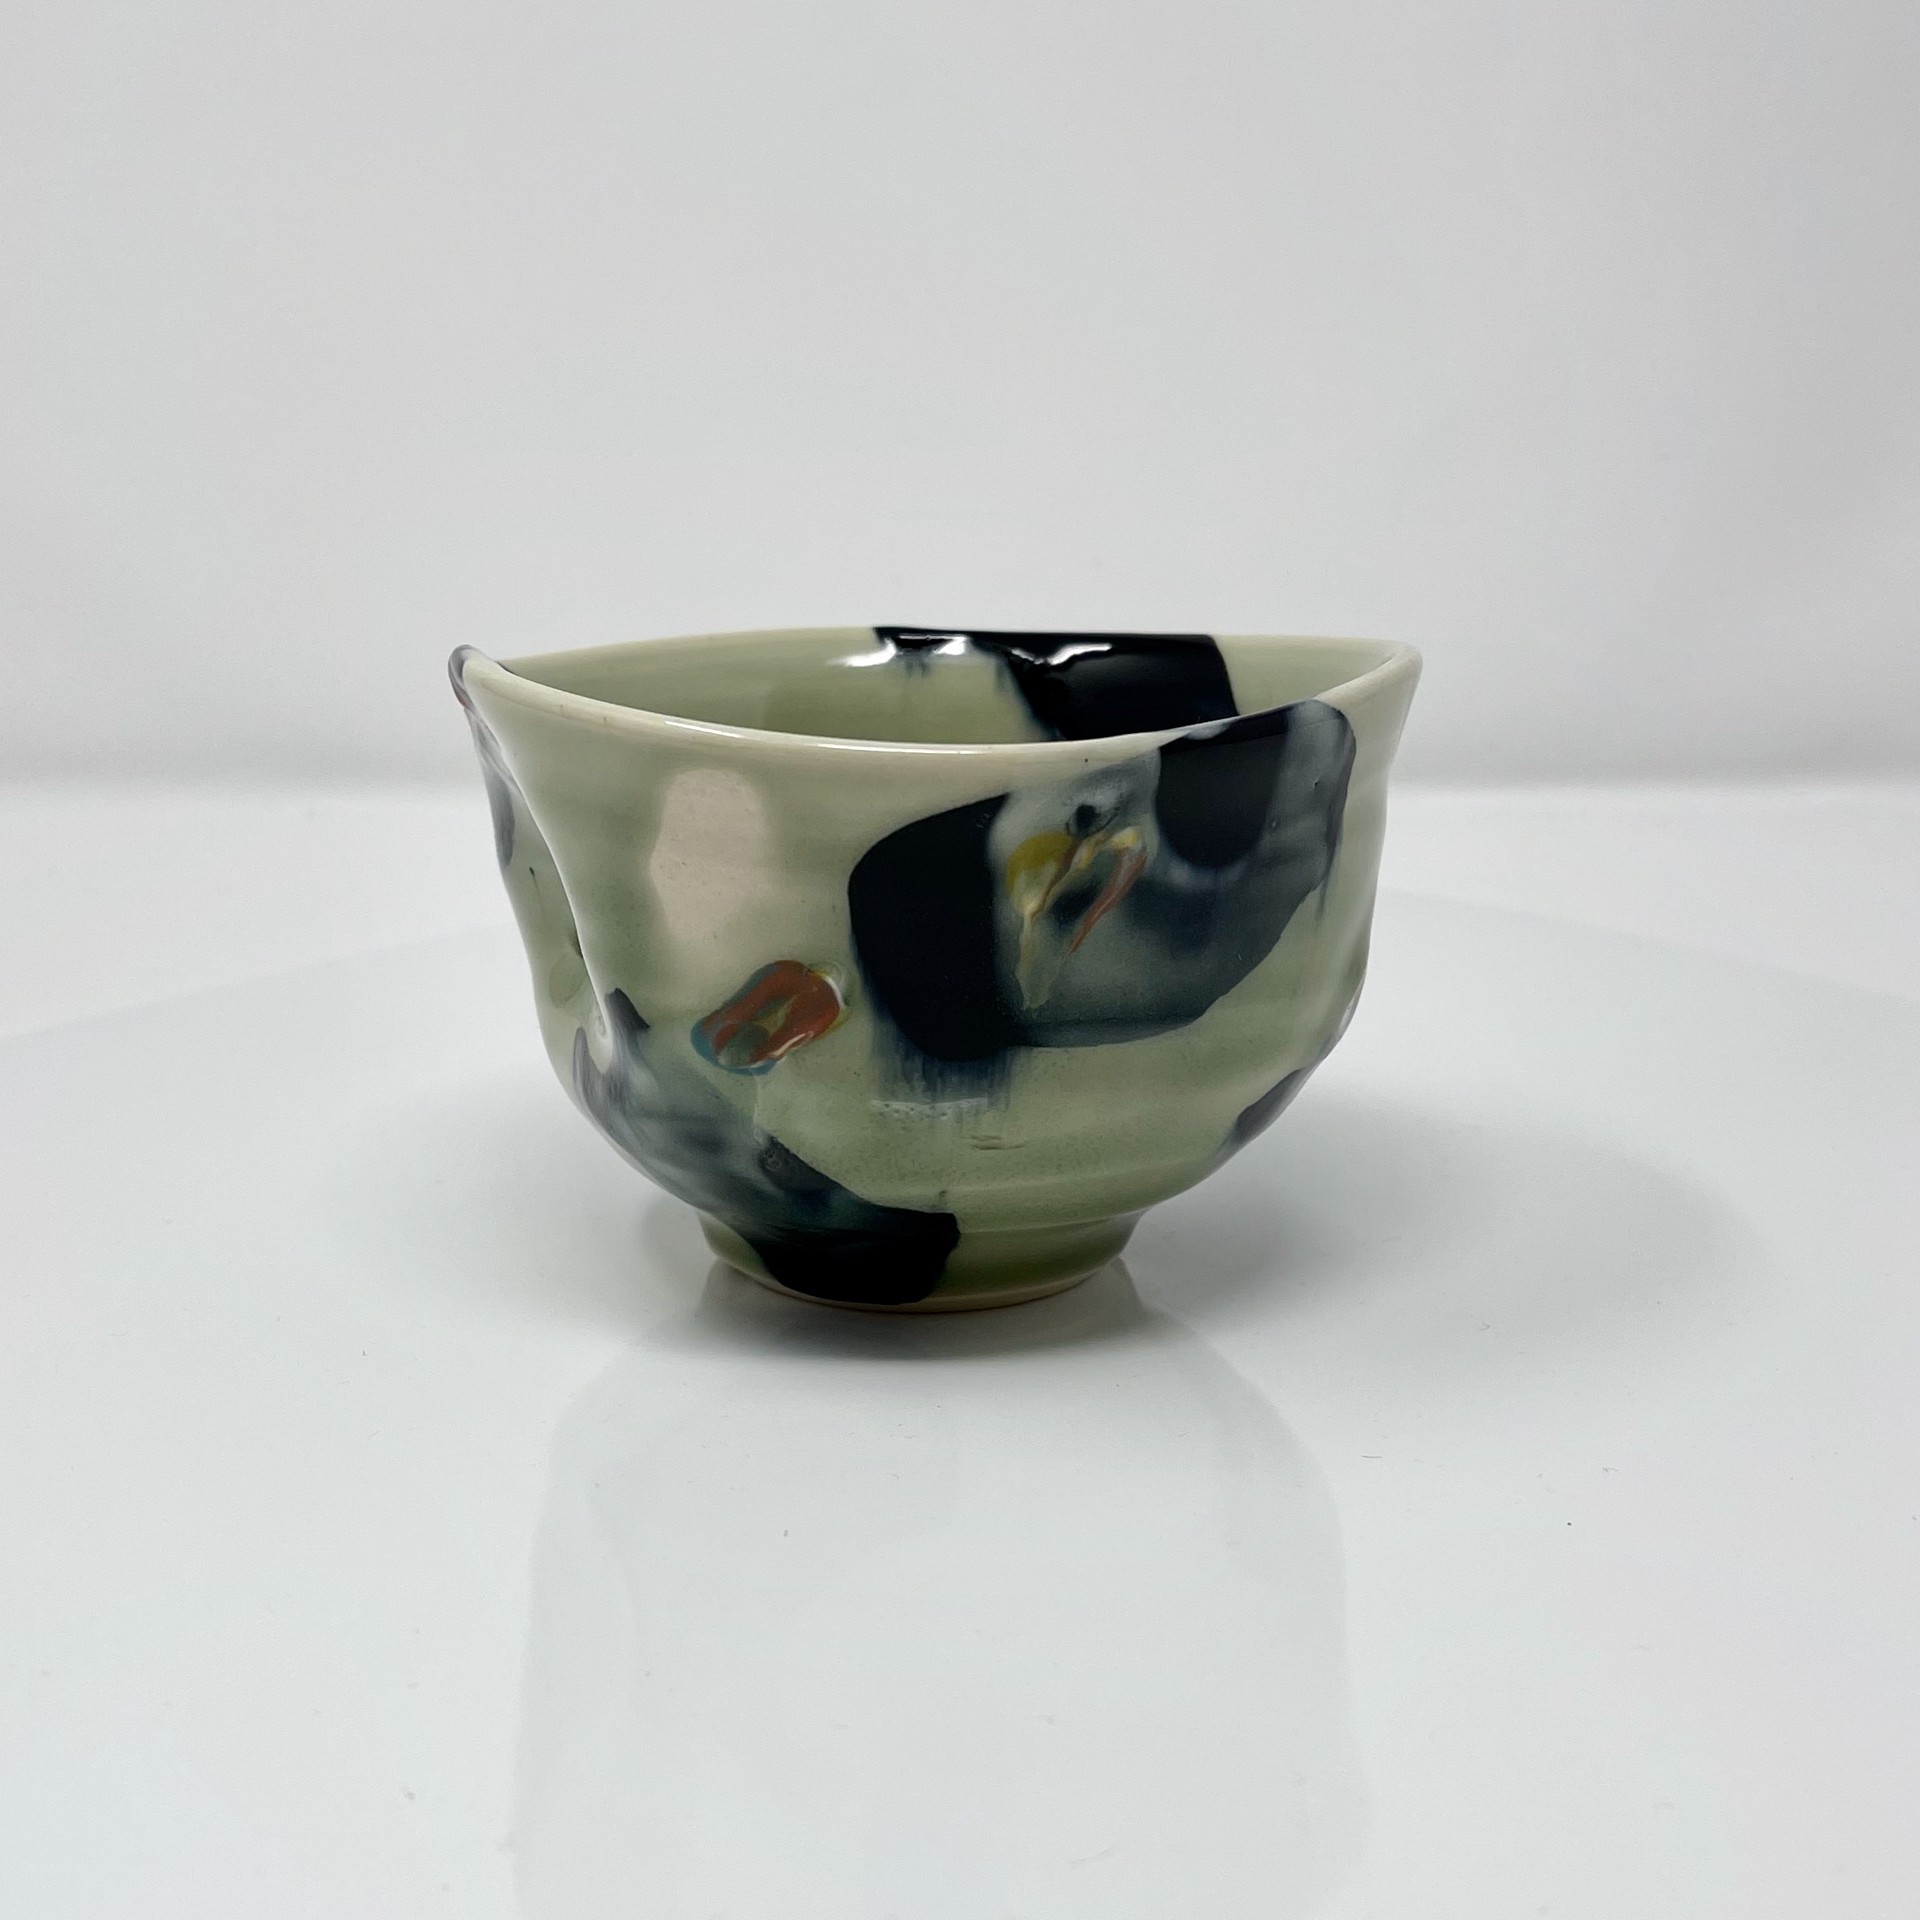 Teabowl by Ralph Nuara